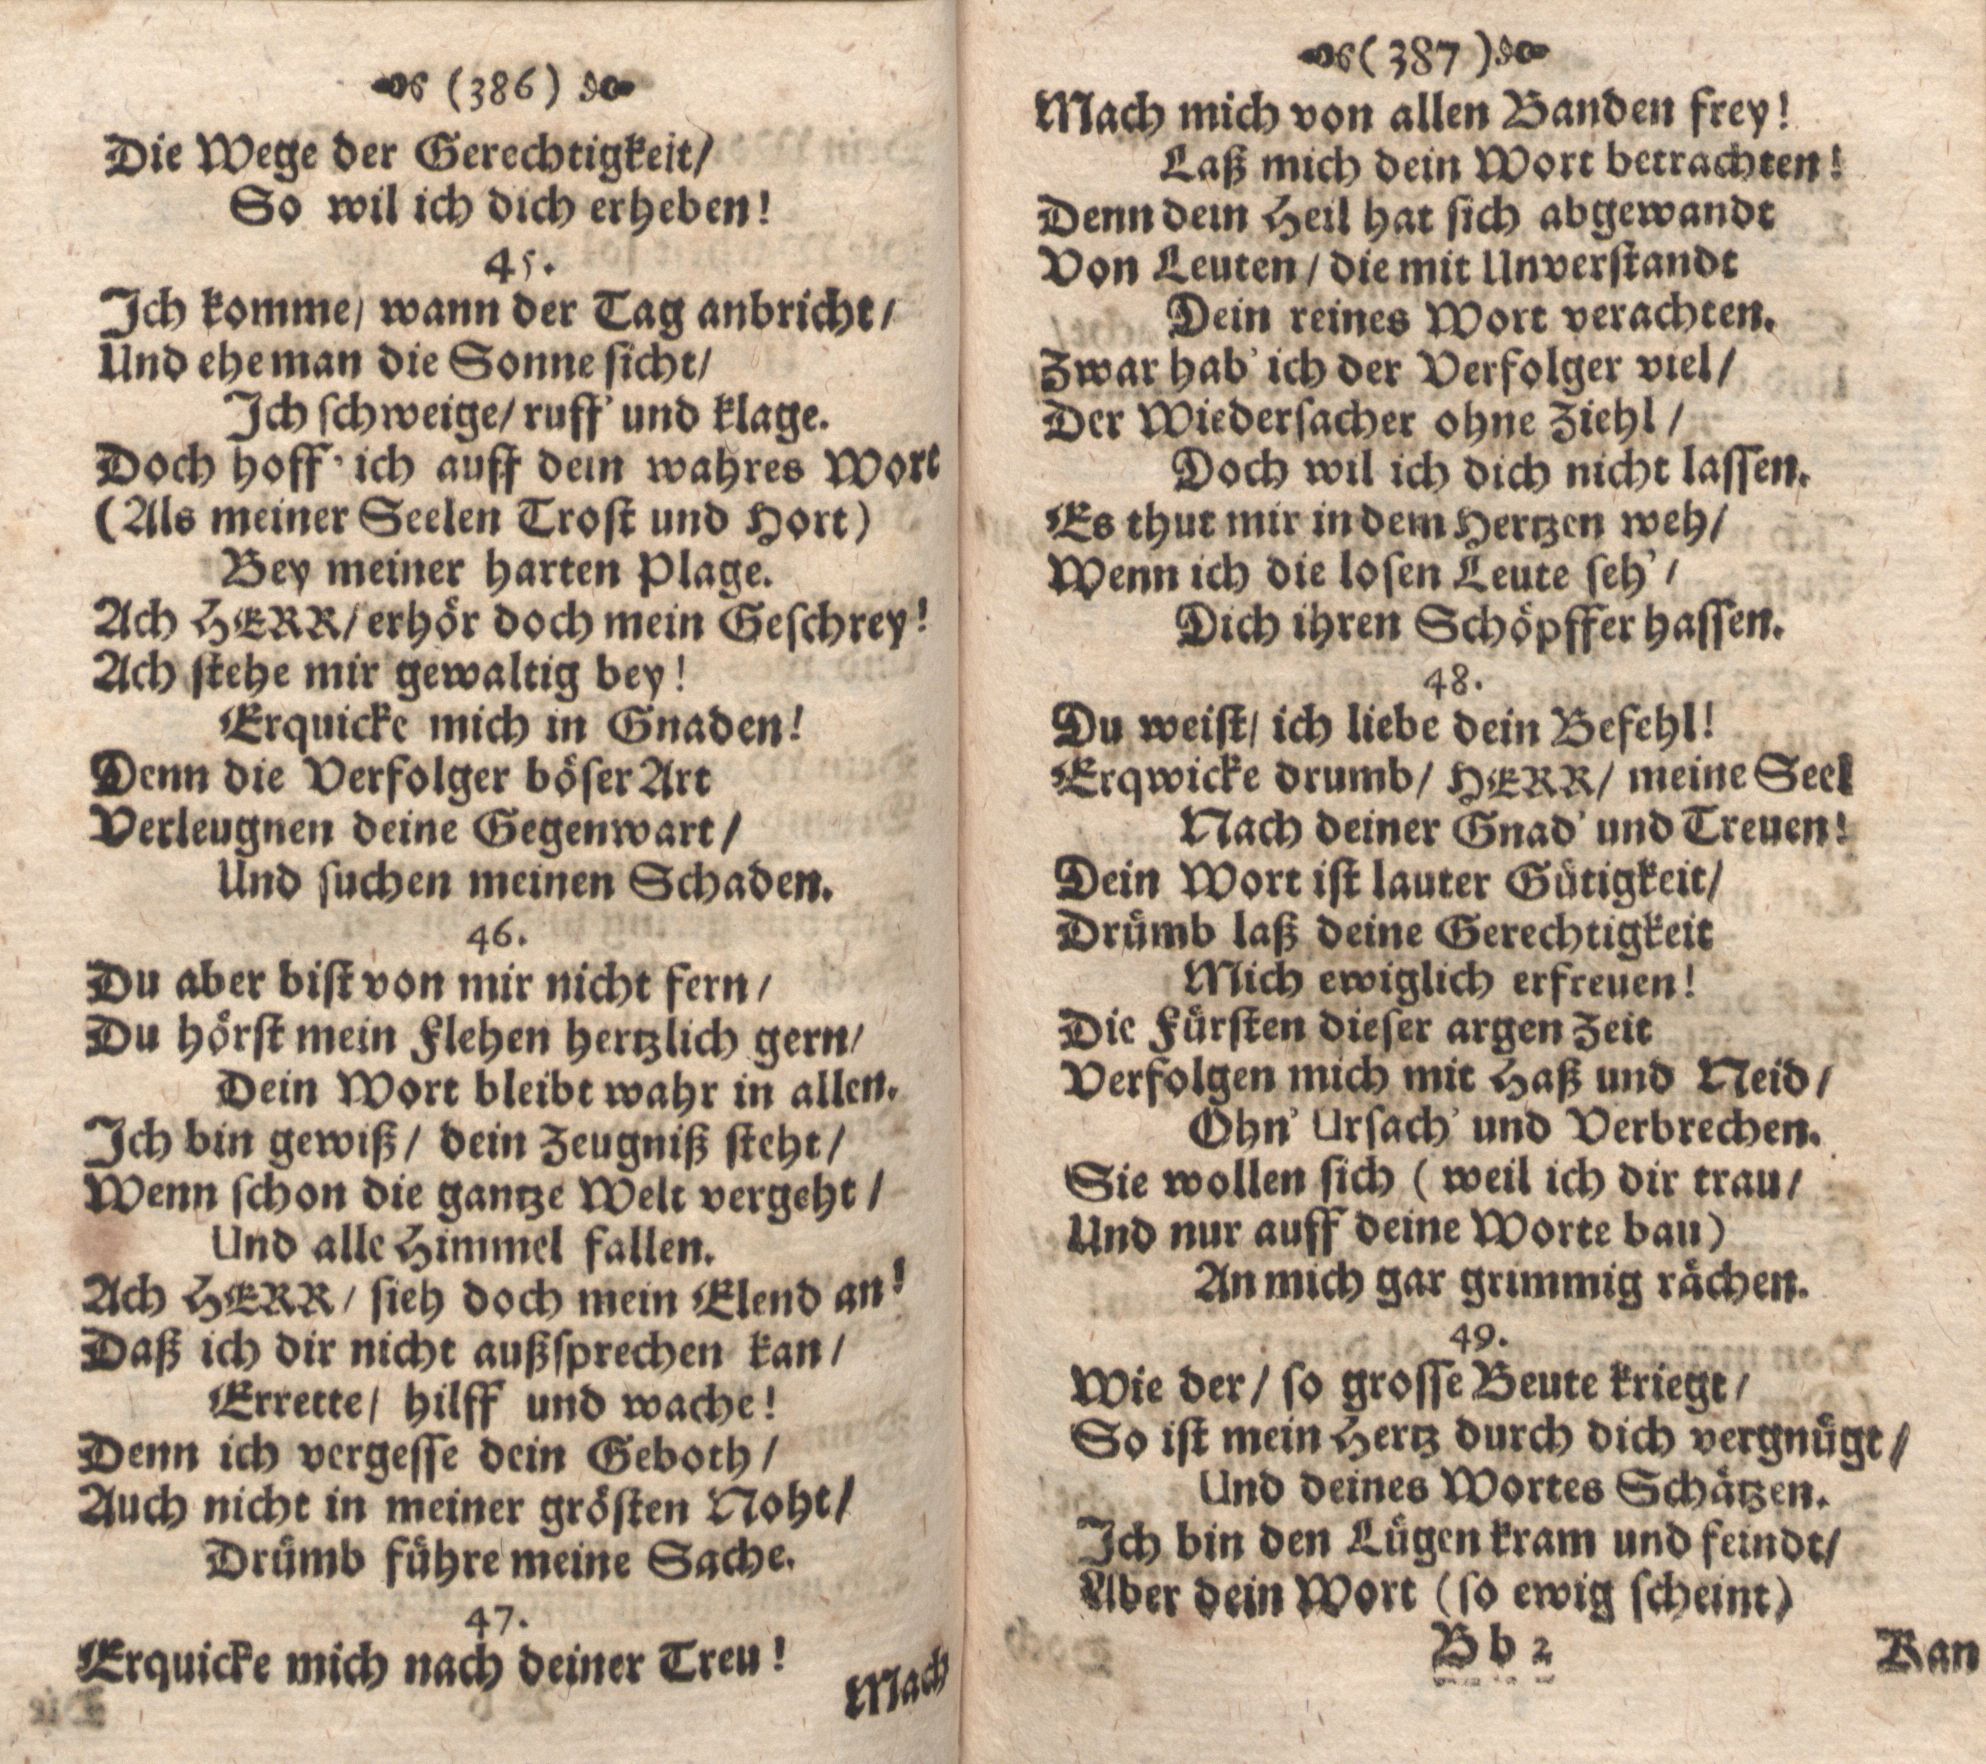 Der Verfolgete, Errettete und Lobsingende David (1686) | 194. (386-387) Main body of text